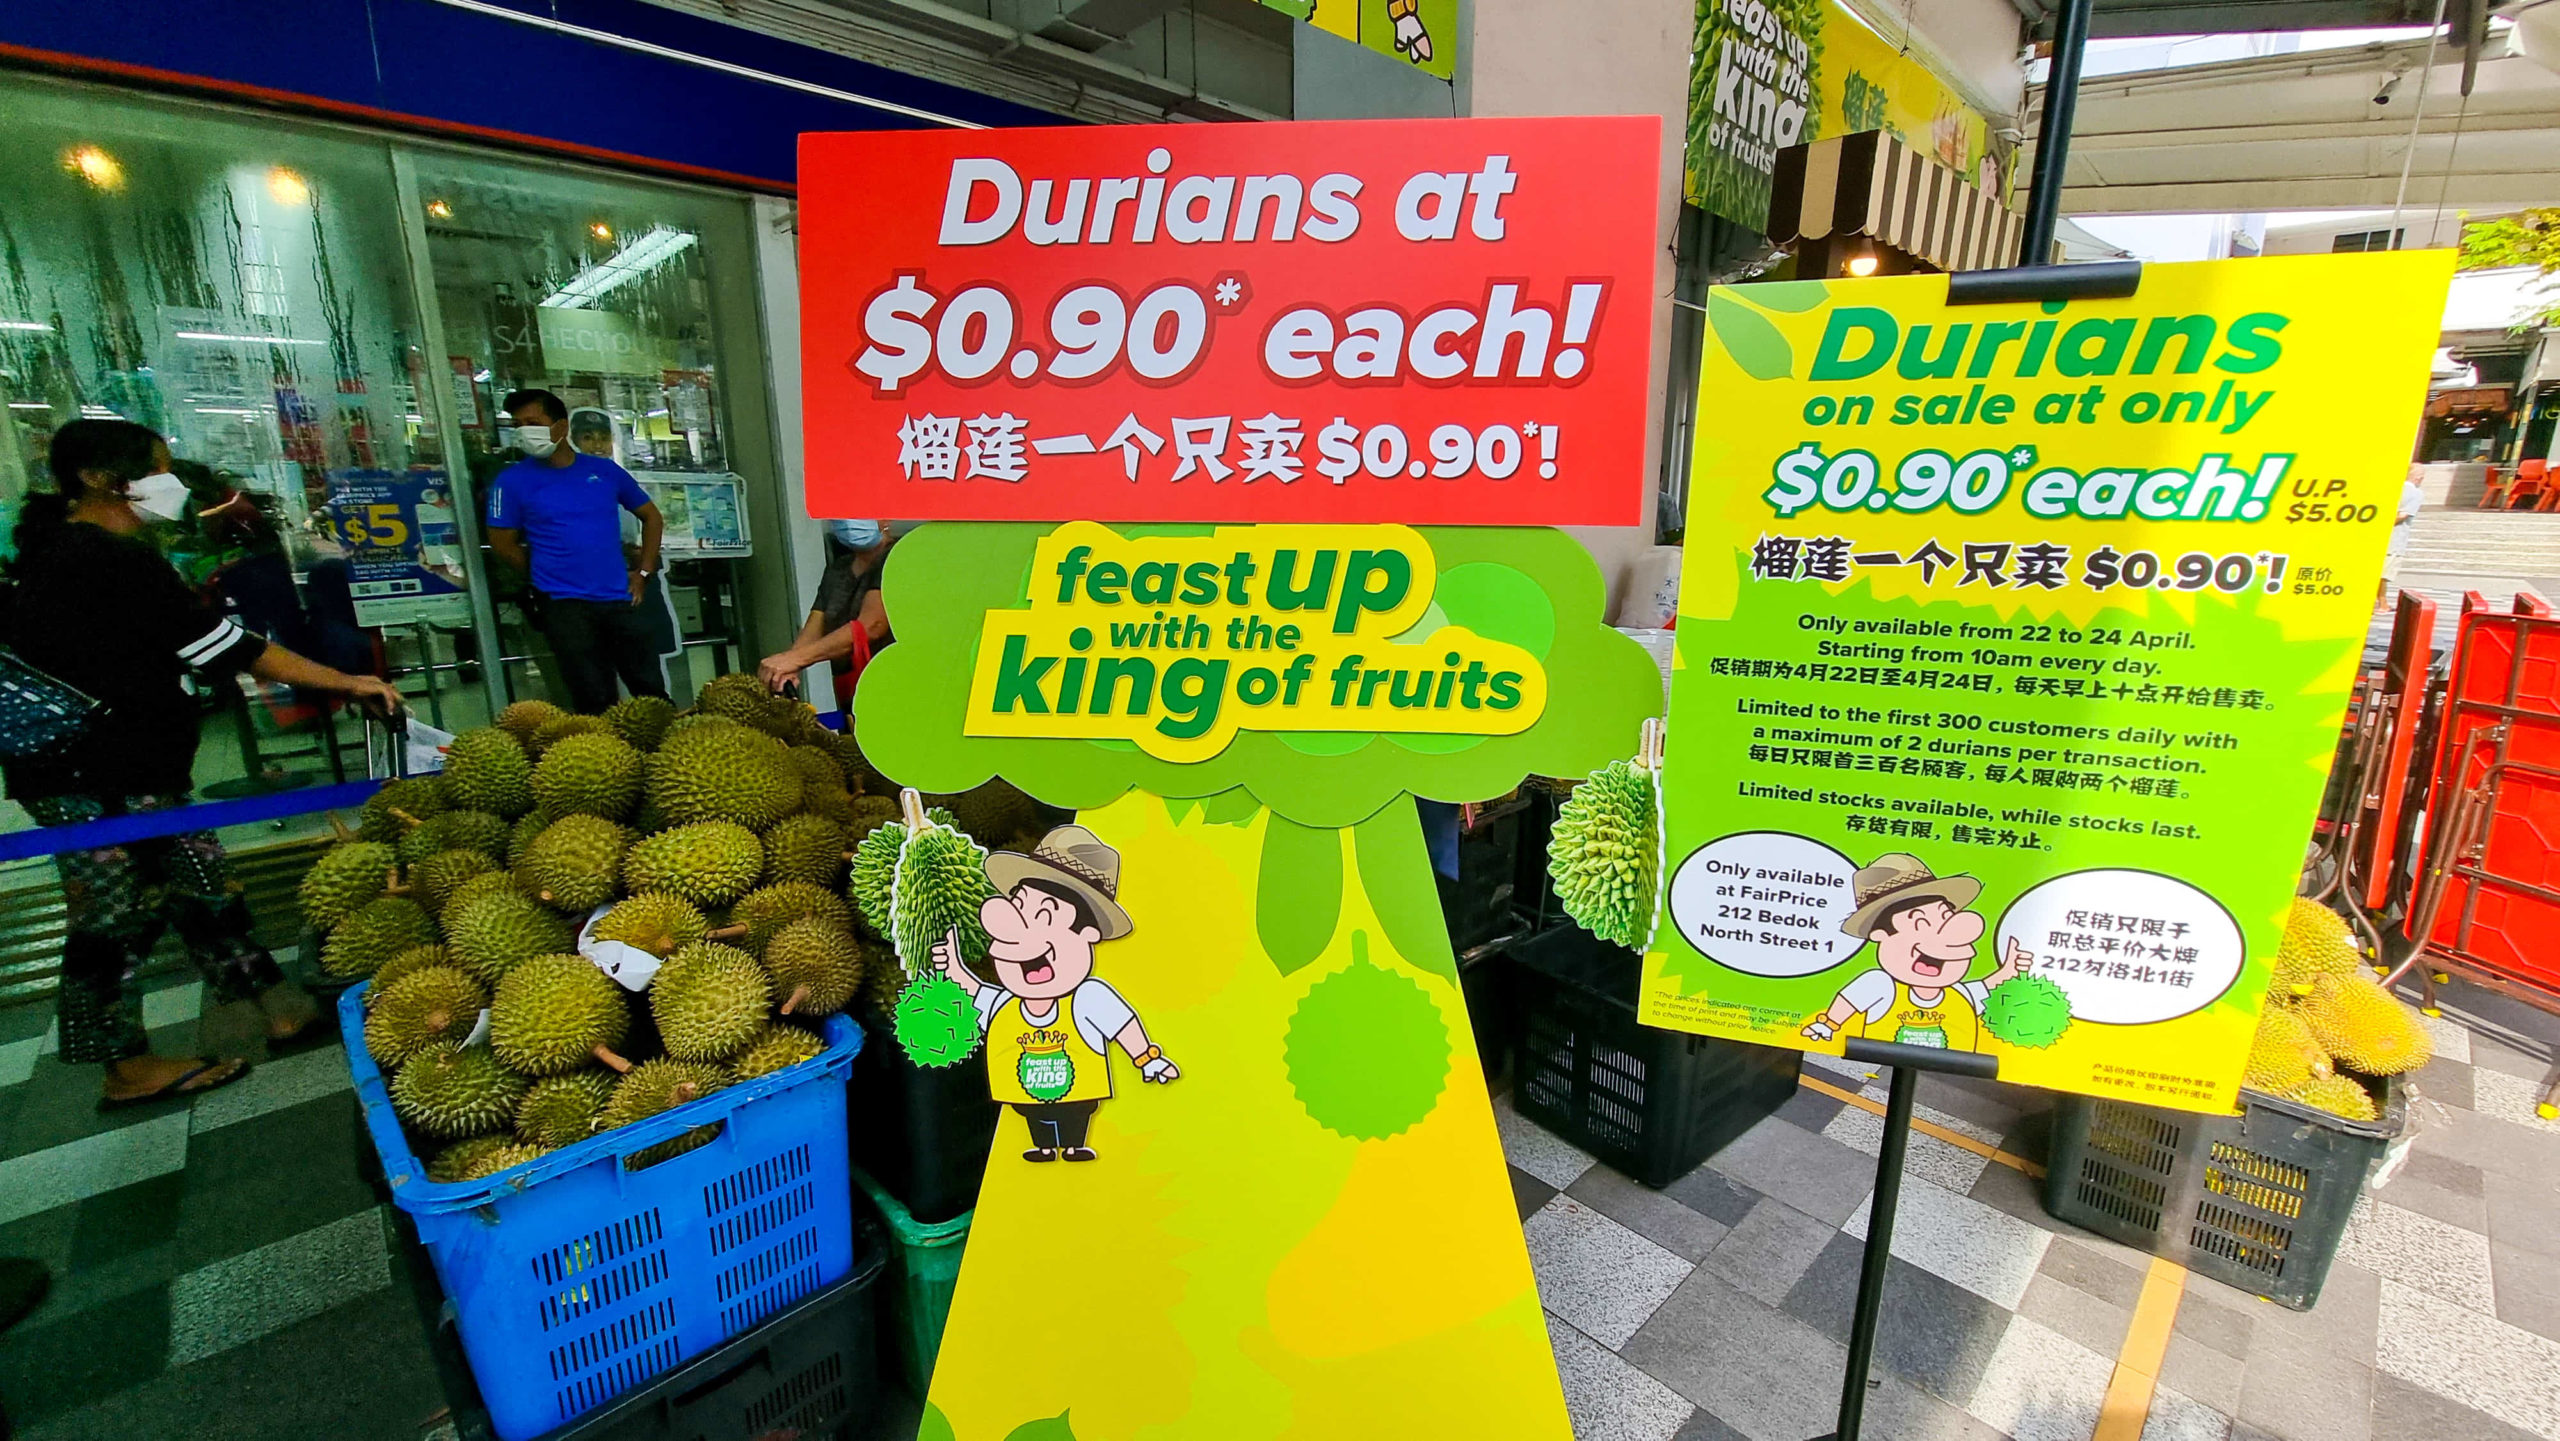 bedok fairprice durians